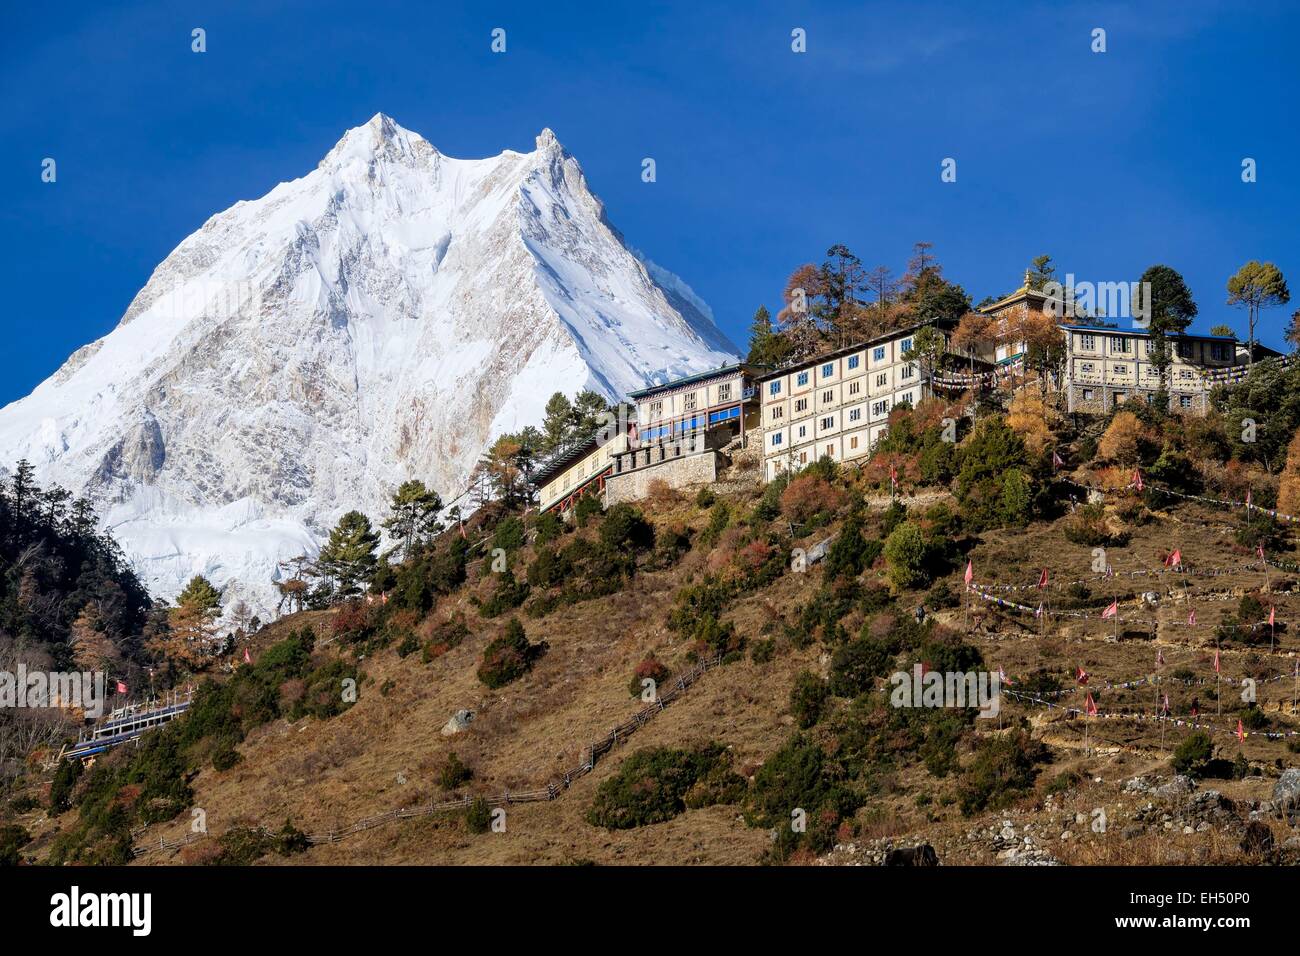 Le Népal, Gandaki zone, Manaslu Circuit, entre Prok et Lho, le mont Manaslu (alt.8156m) du village de Lho (alt.3180m) et Ribung monastère Gompa Banque D'Images